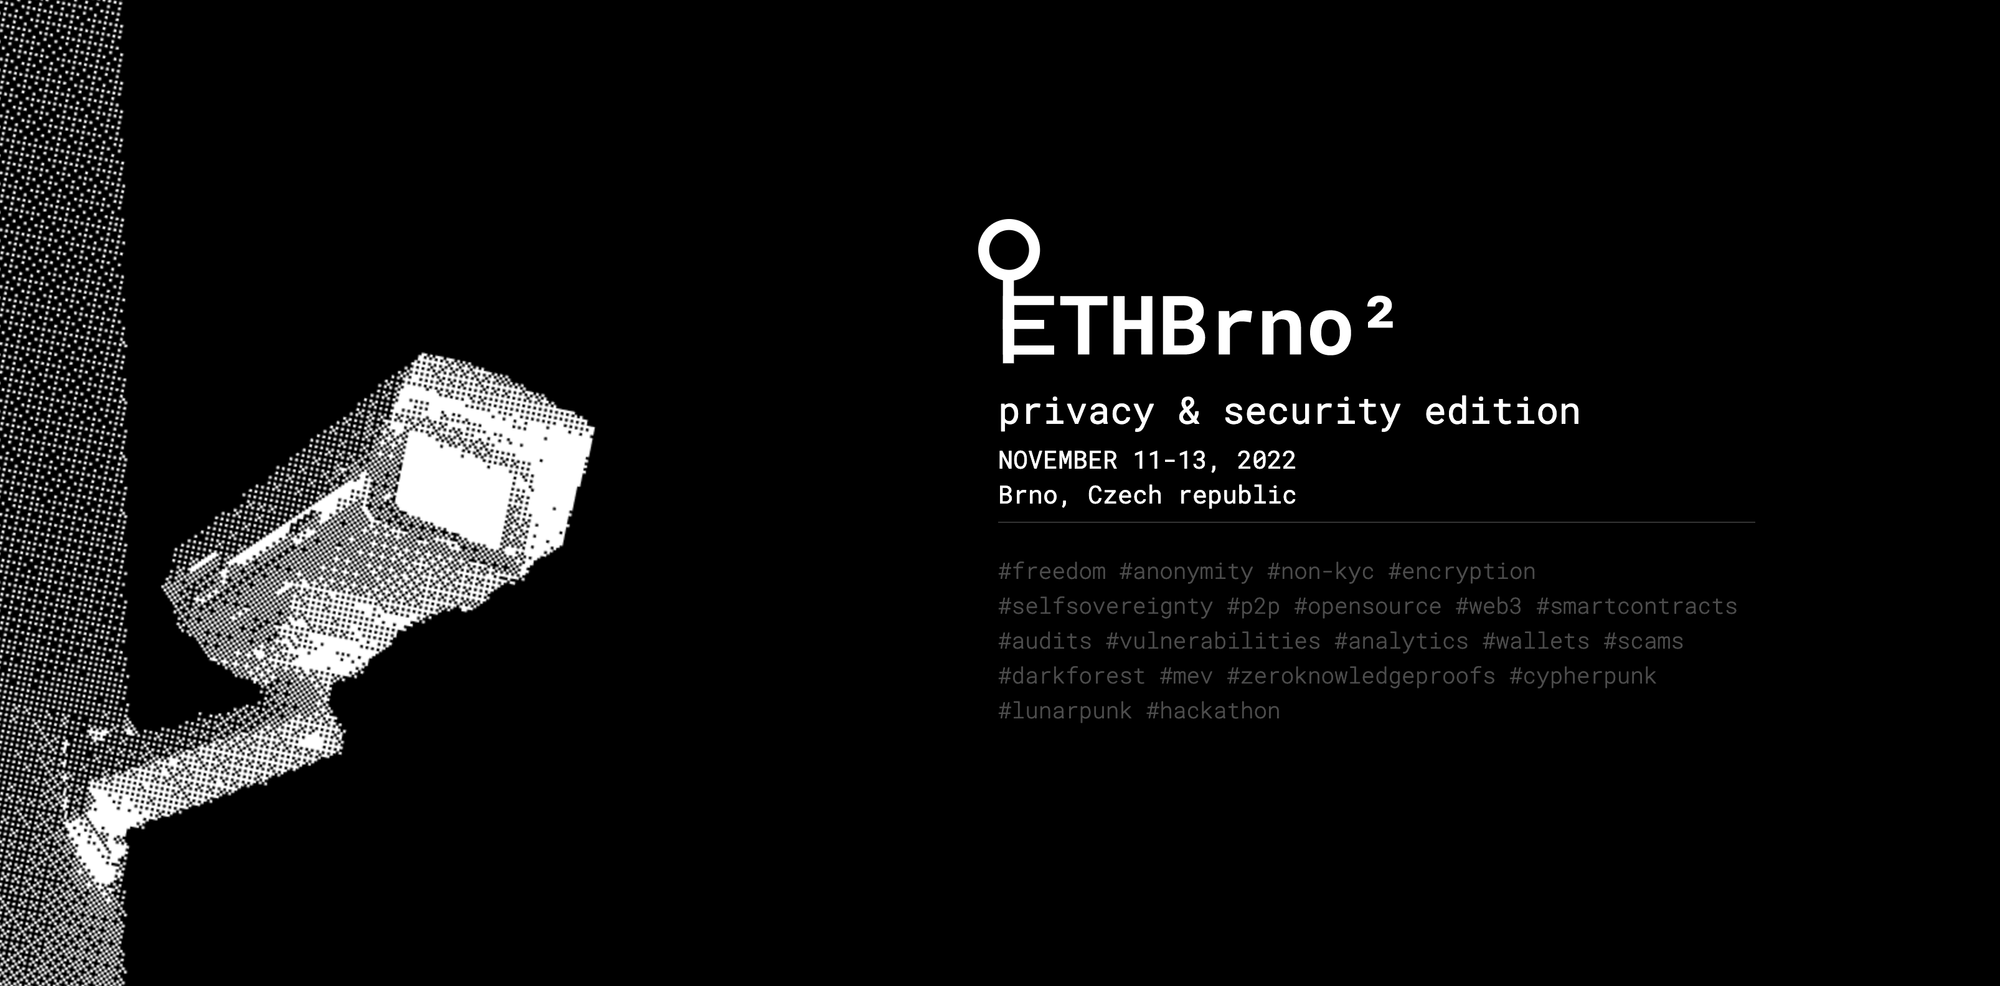 ETHBrno² 2022 - A Lunarpunk Hackathon